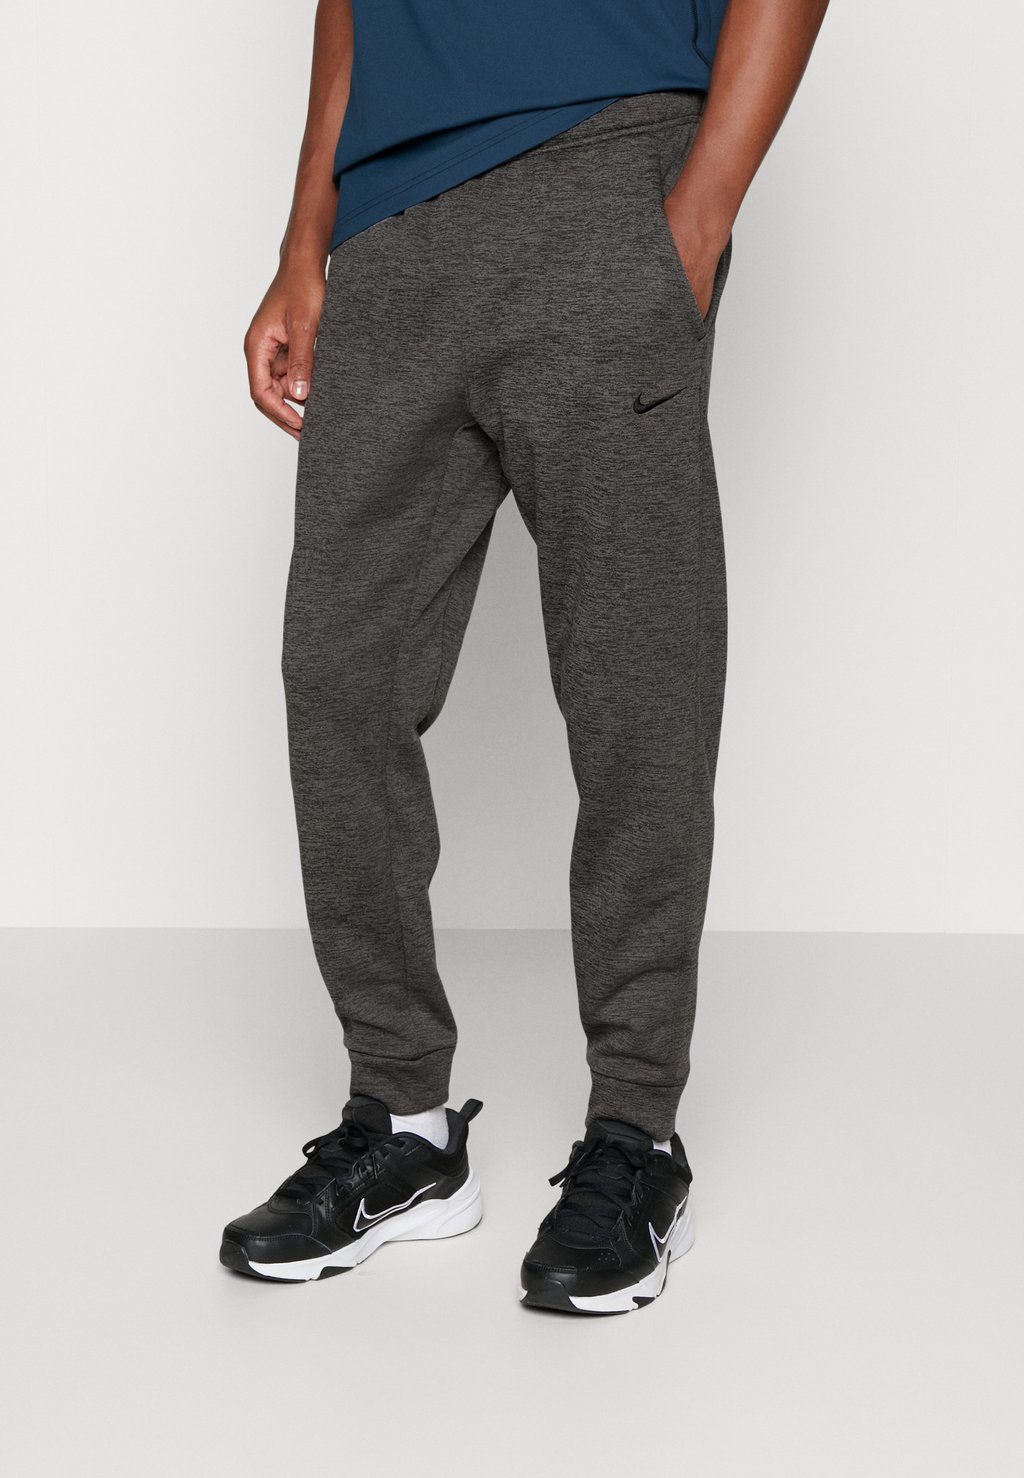 Спортивные брюки PANT TAPER Nike, темно-серый/темно-дымчато-серый/черный